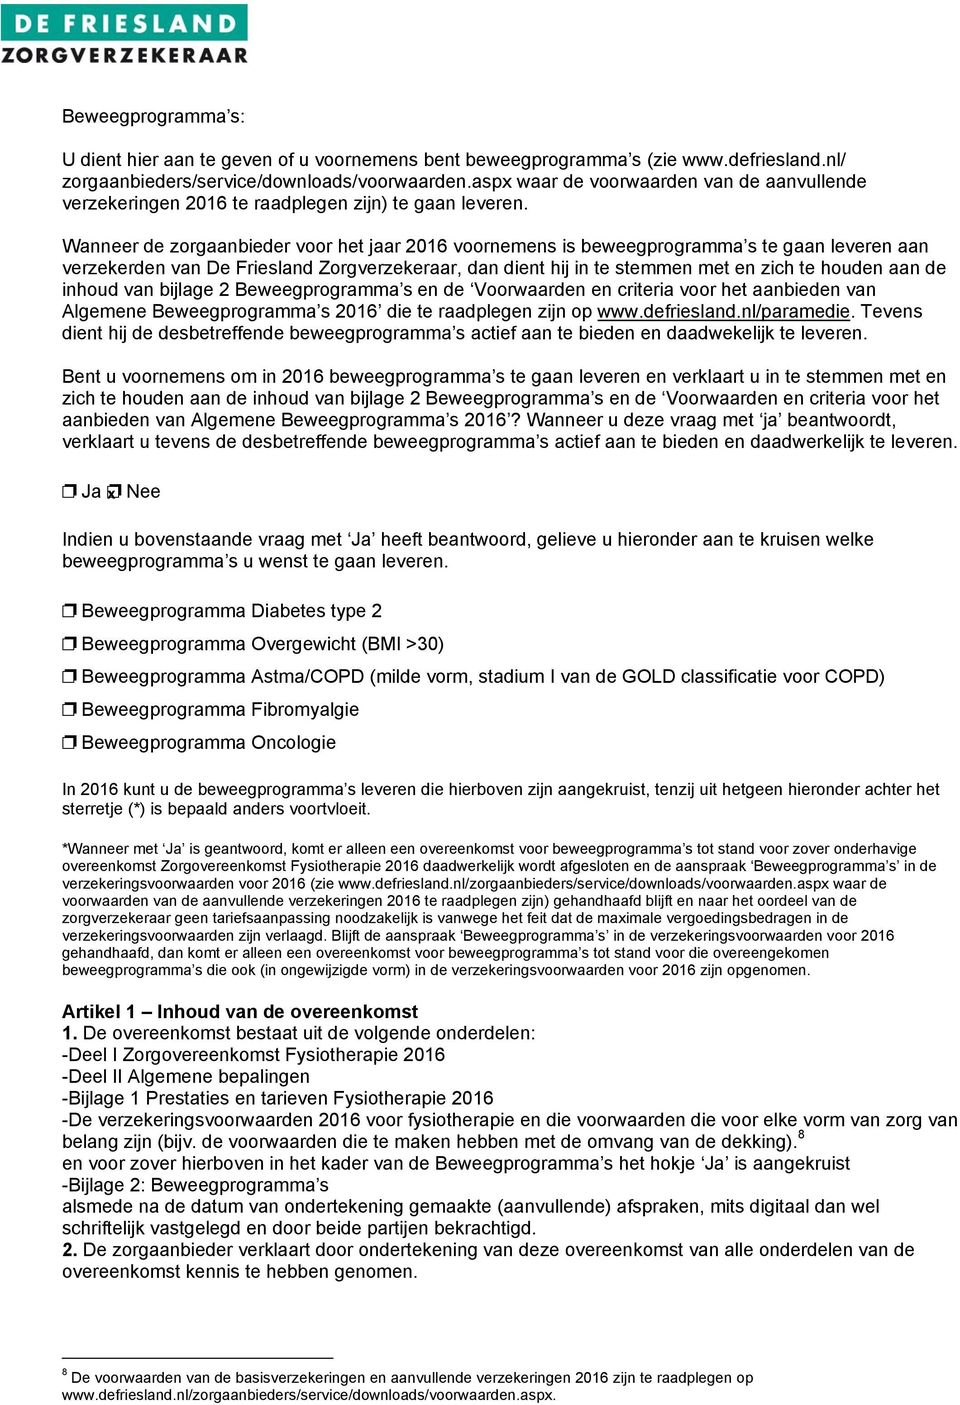 Wanneer de zorgaanbieder voor het jaar 2016 voornemens is beweegprogramma s te gaan leveren aan verzekerden van De Friesland Zorgverzekeraar, dan dient hij in te stemmen met en zich te houden aan de